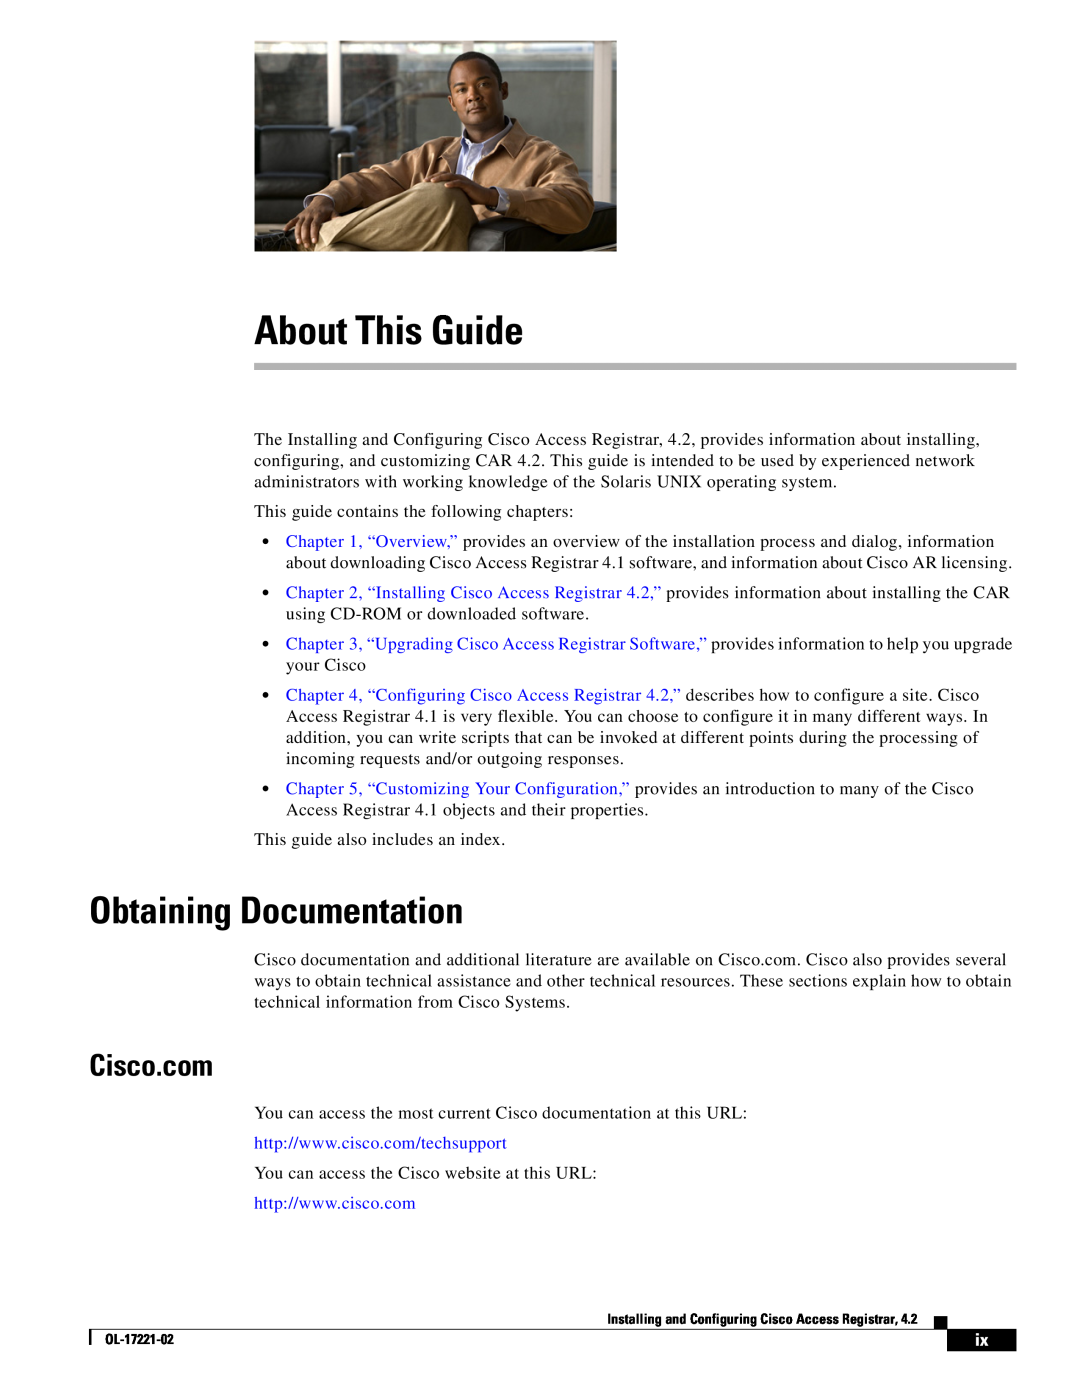 Cisco Systems 4.2 manual About This Guide, Obtaining Documentation, Cisco.com 